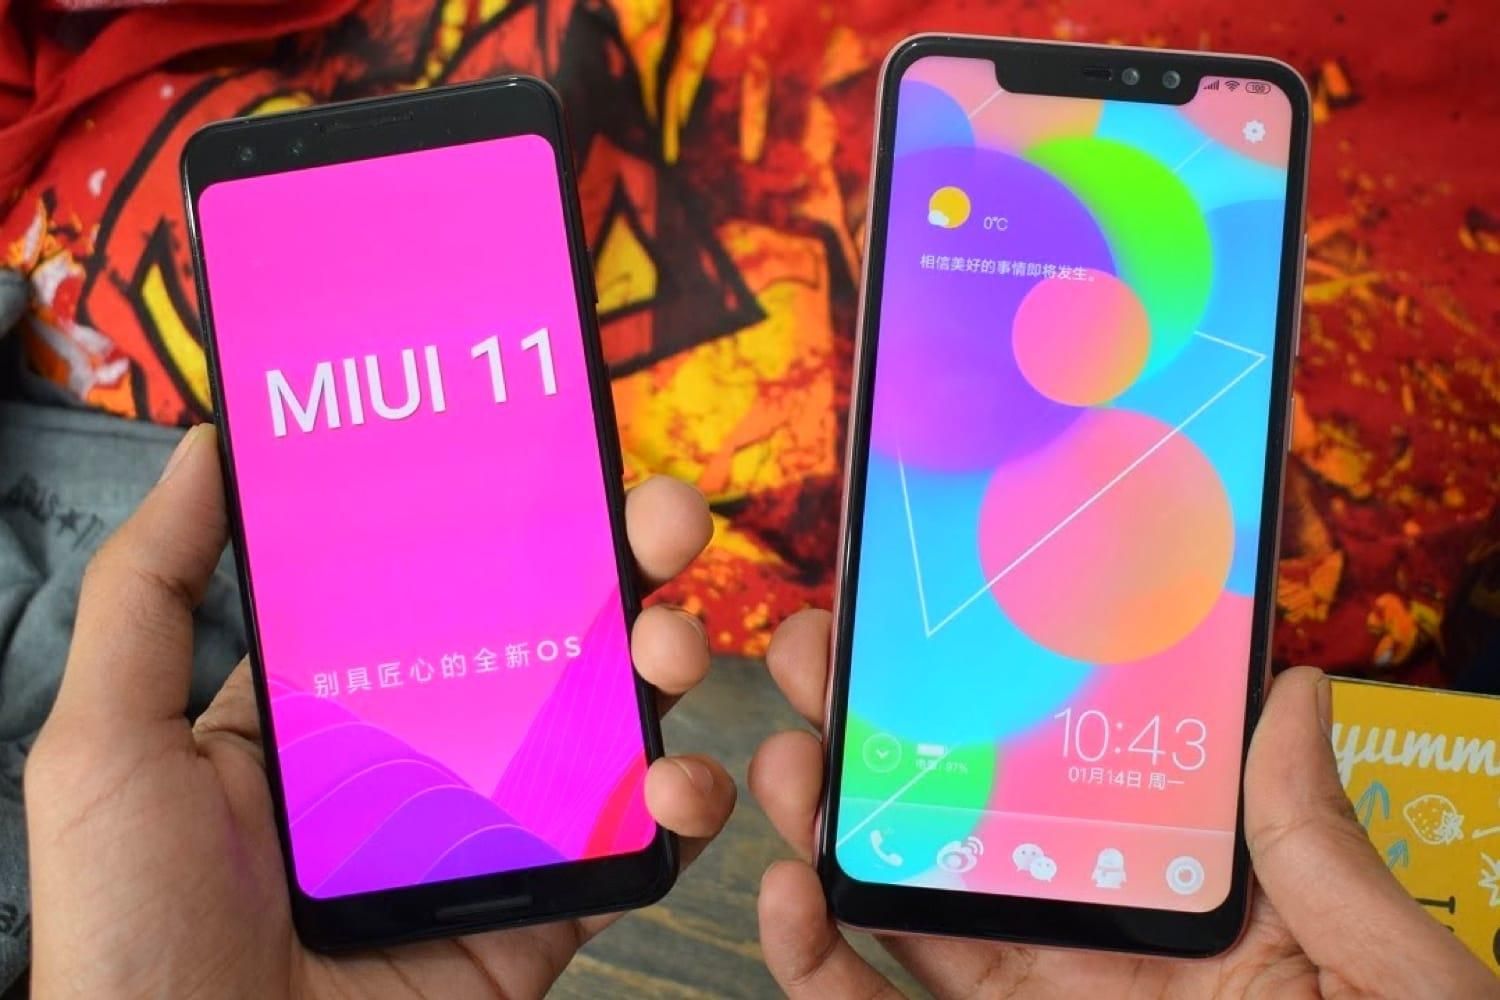 Xiaomi MIUI 11: які смартфони оновляться - список моделей